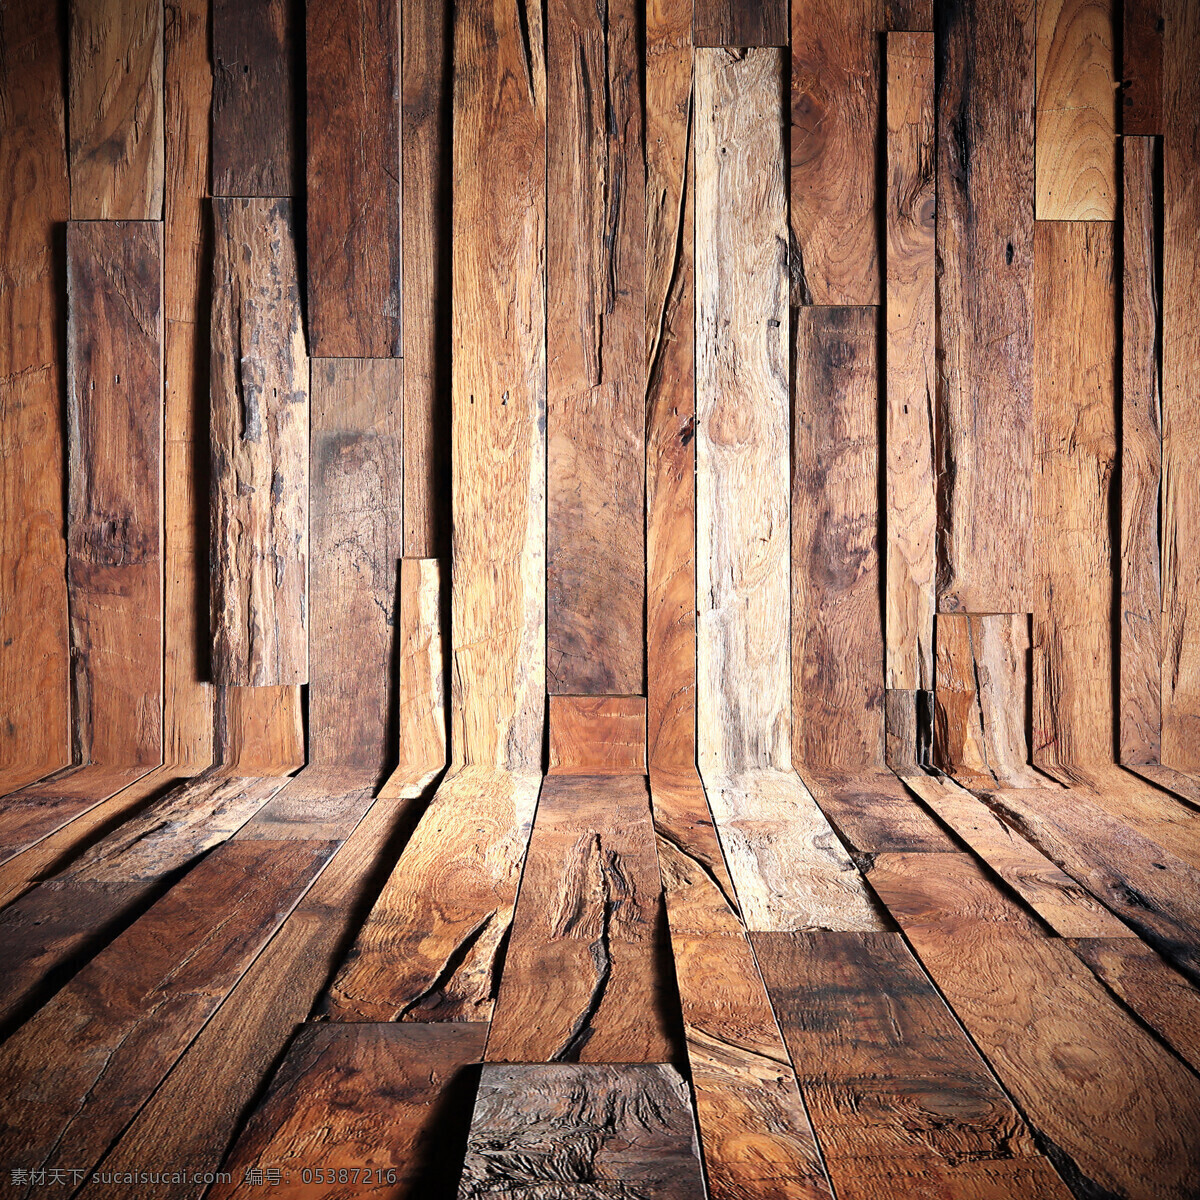 实木木头纹理 木纹 背景素材 材质贴图 高清木纹 木地板 堆叠木纹 高清 室内设计 木纹纹理 木质纹理 地板 木头 木板背景